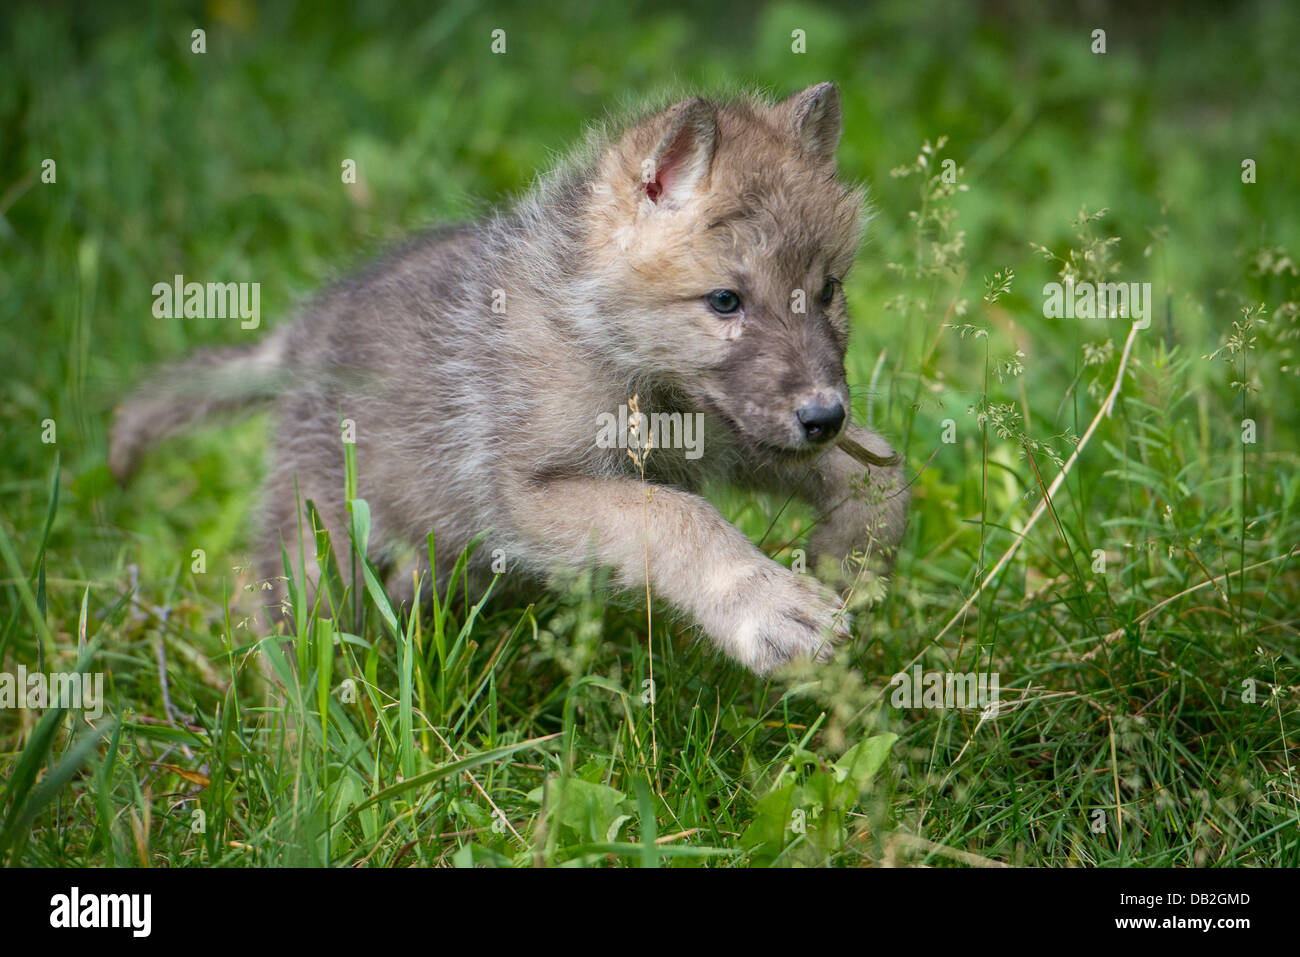 Wolf Pup running through green grass Stock Photo